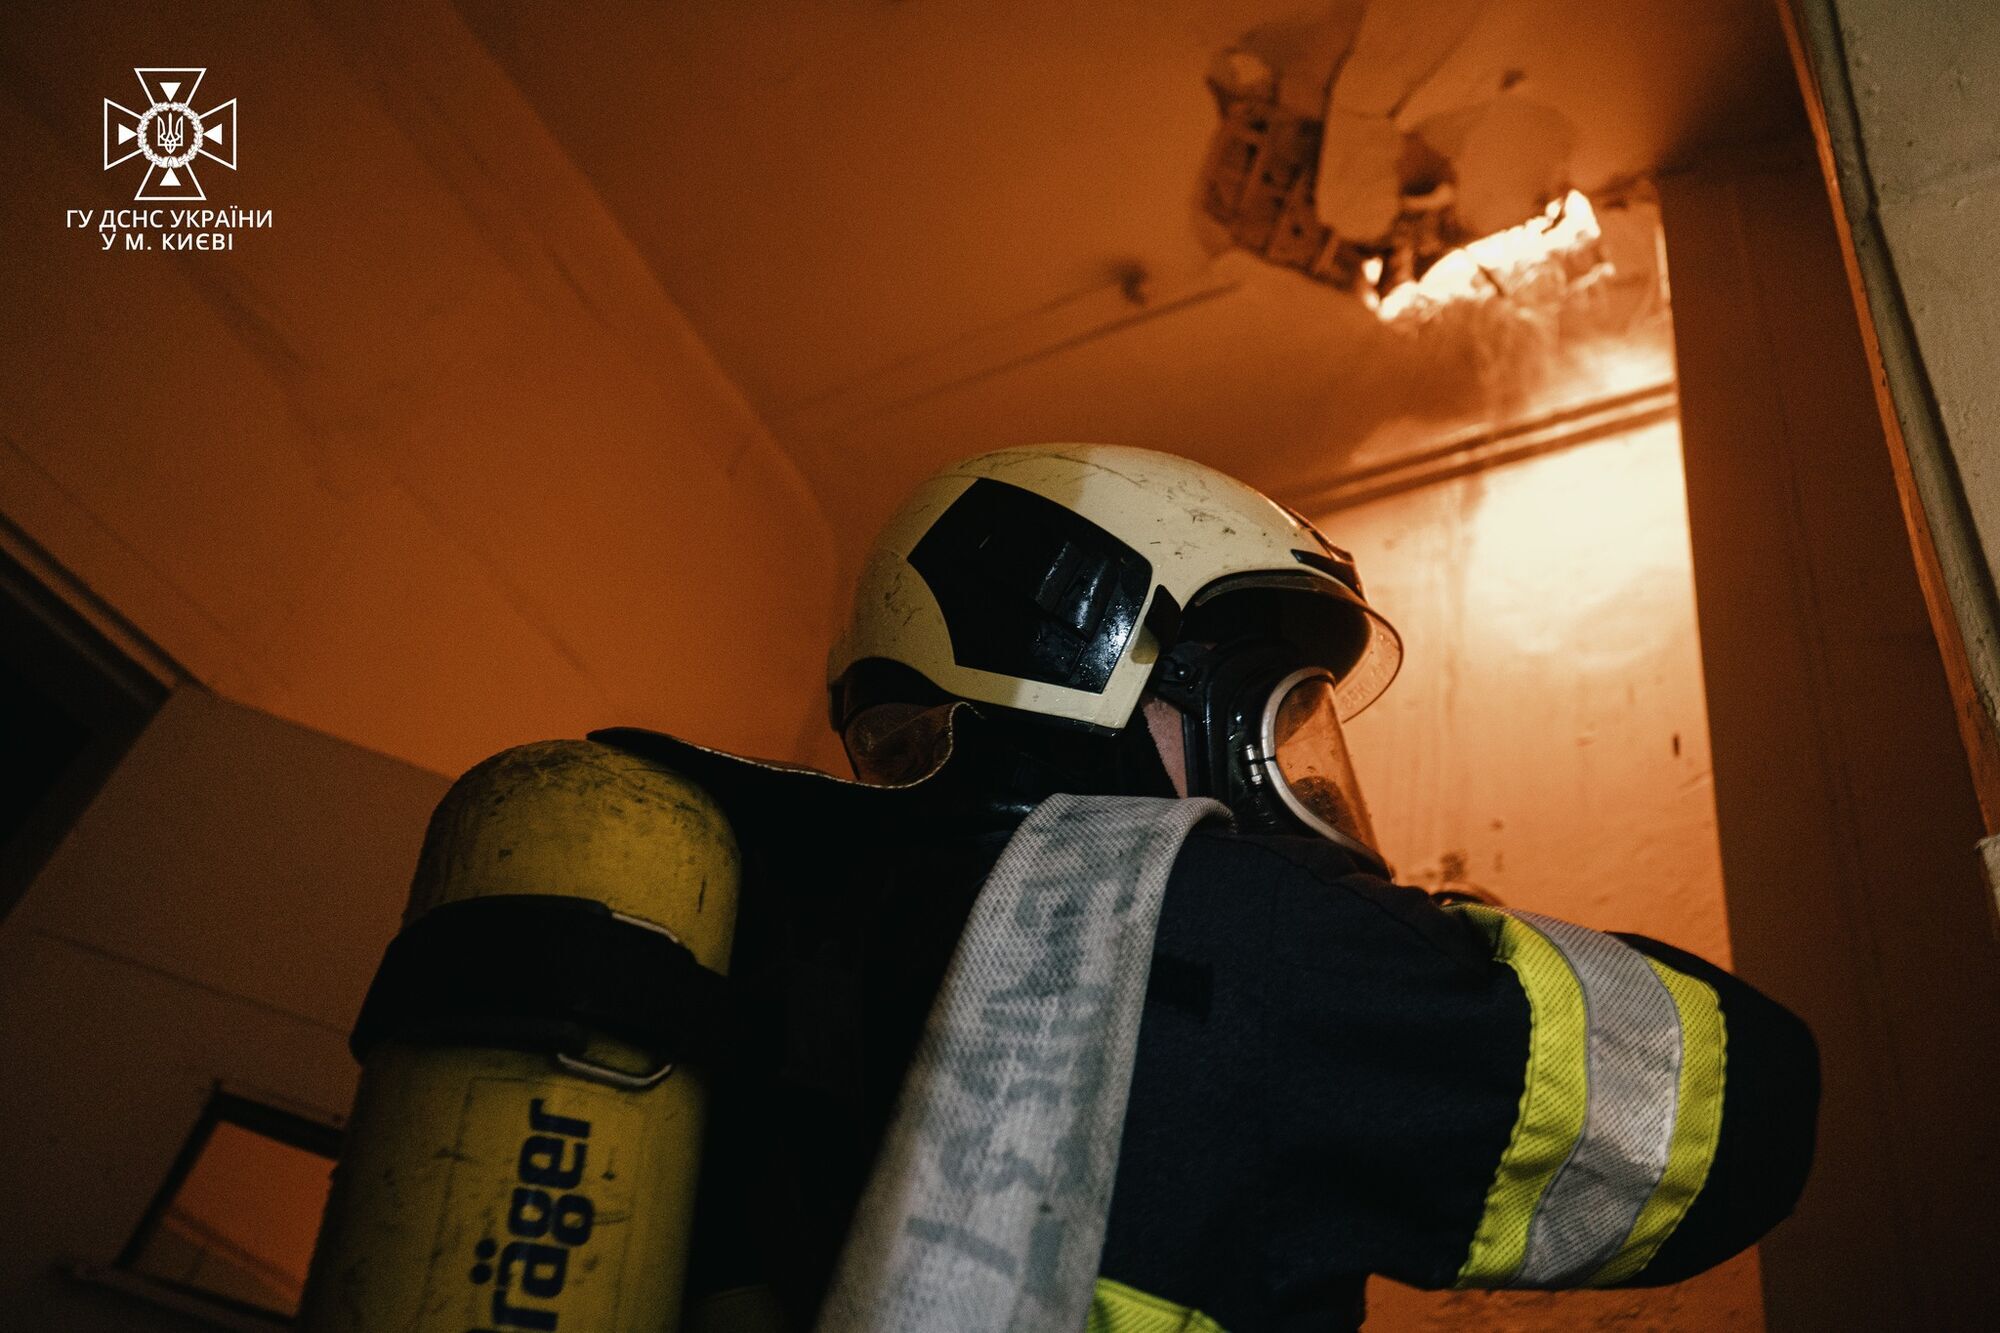 В центре Киева произошел масштабный пожар: спасатели тушили огонь около 5 часов. Фото и видео